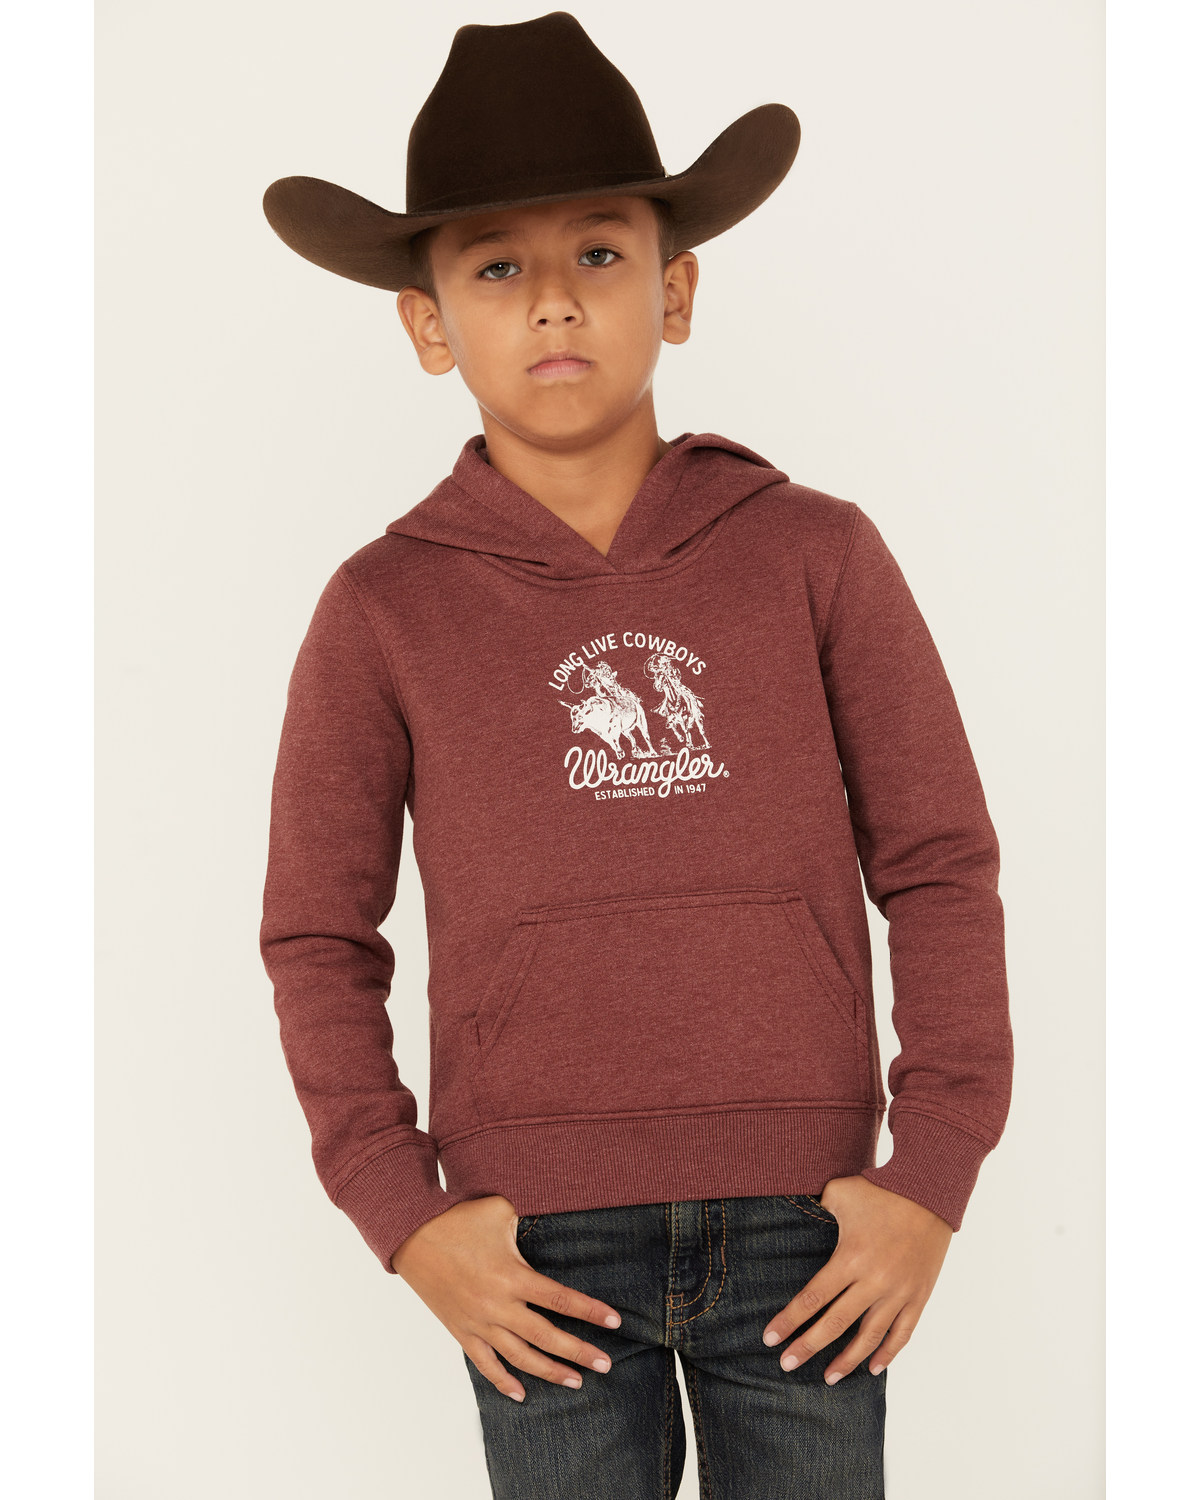 Wrangler Boys' Long Live Cowboys Hooded Sweatshirt